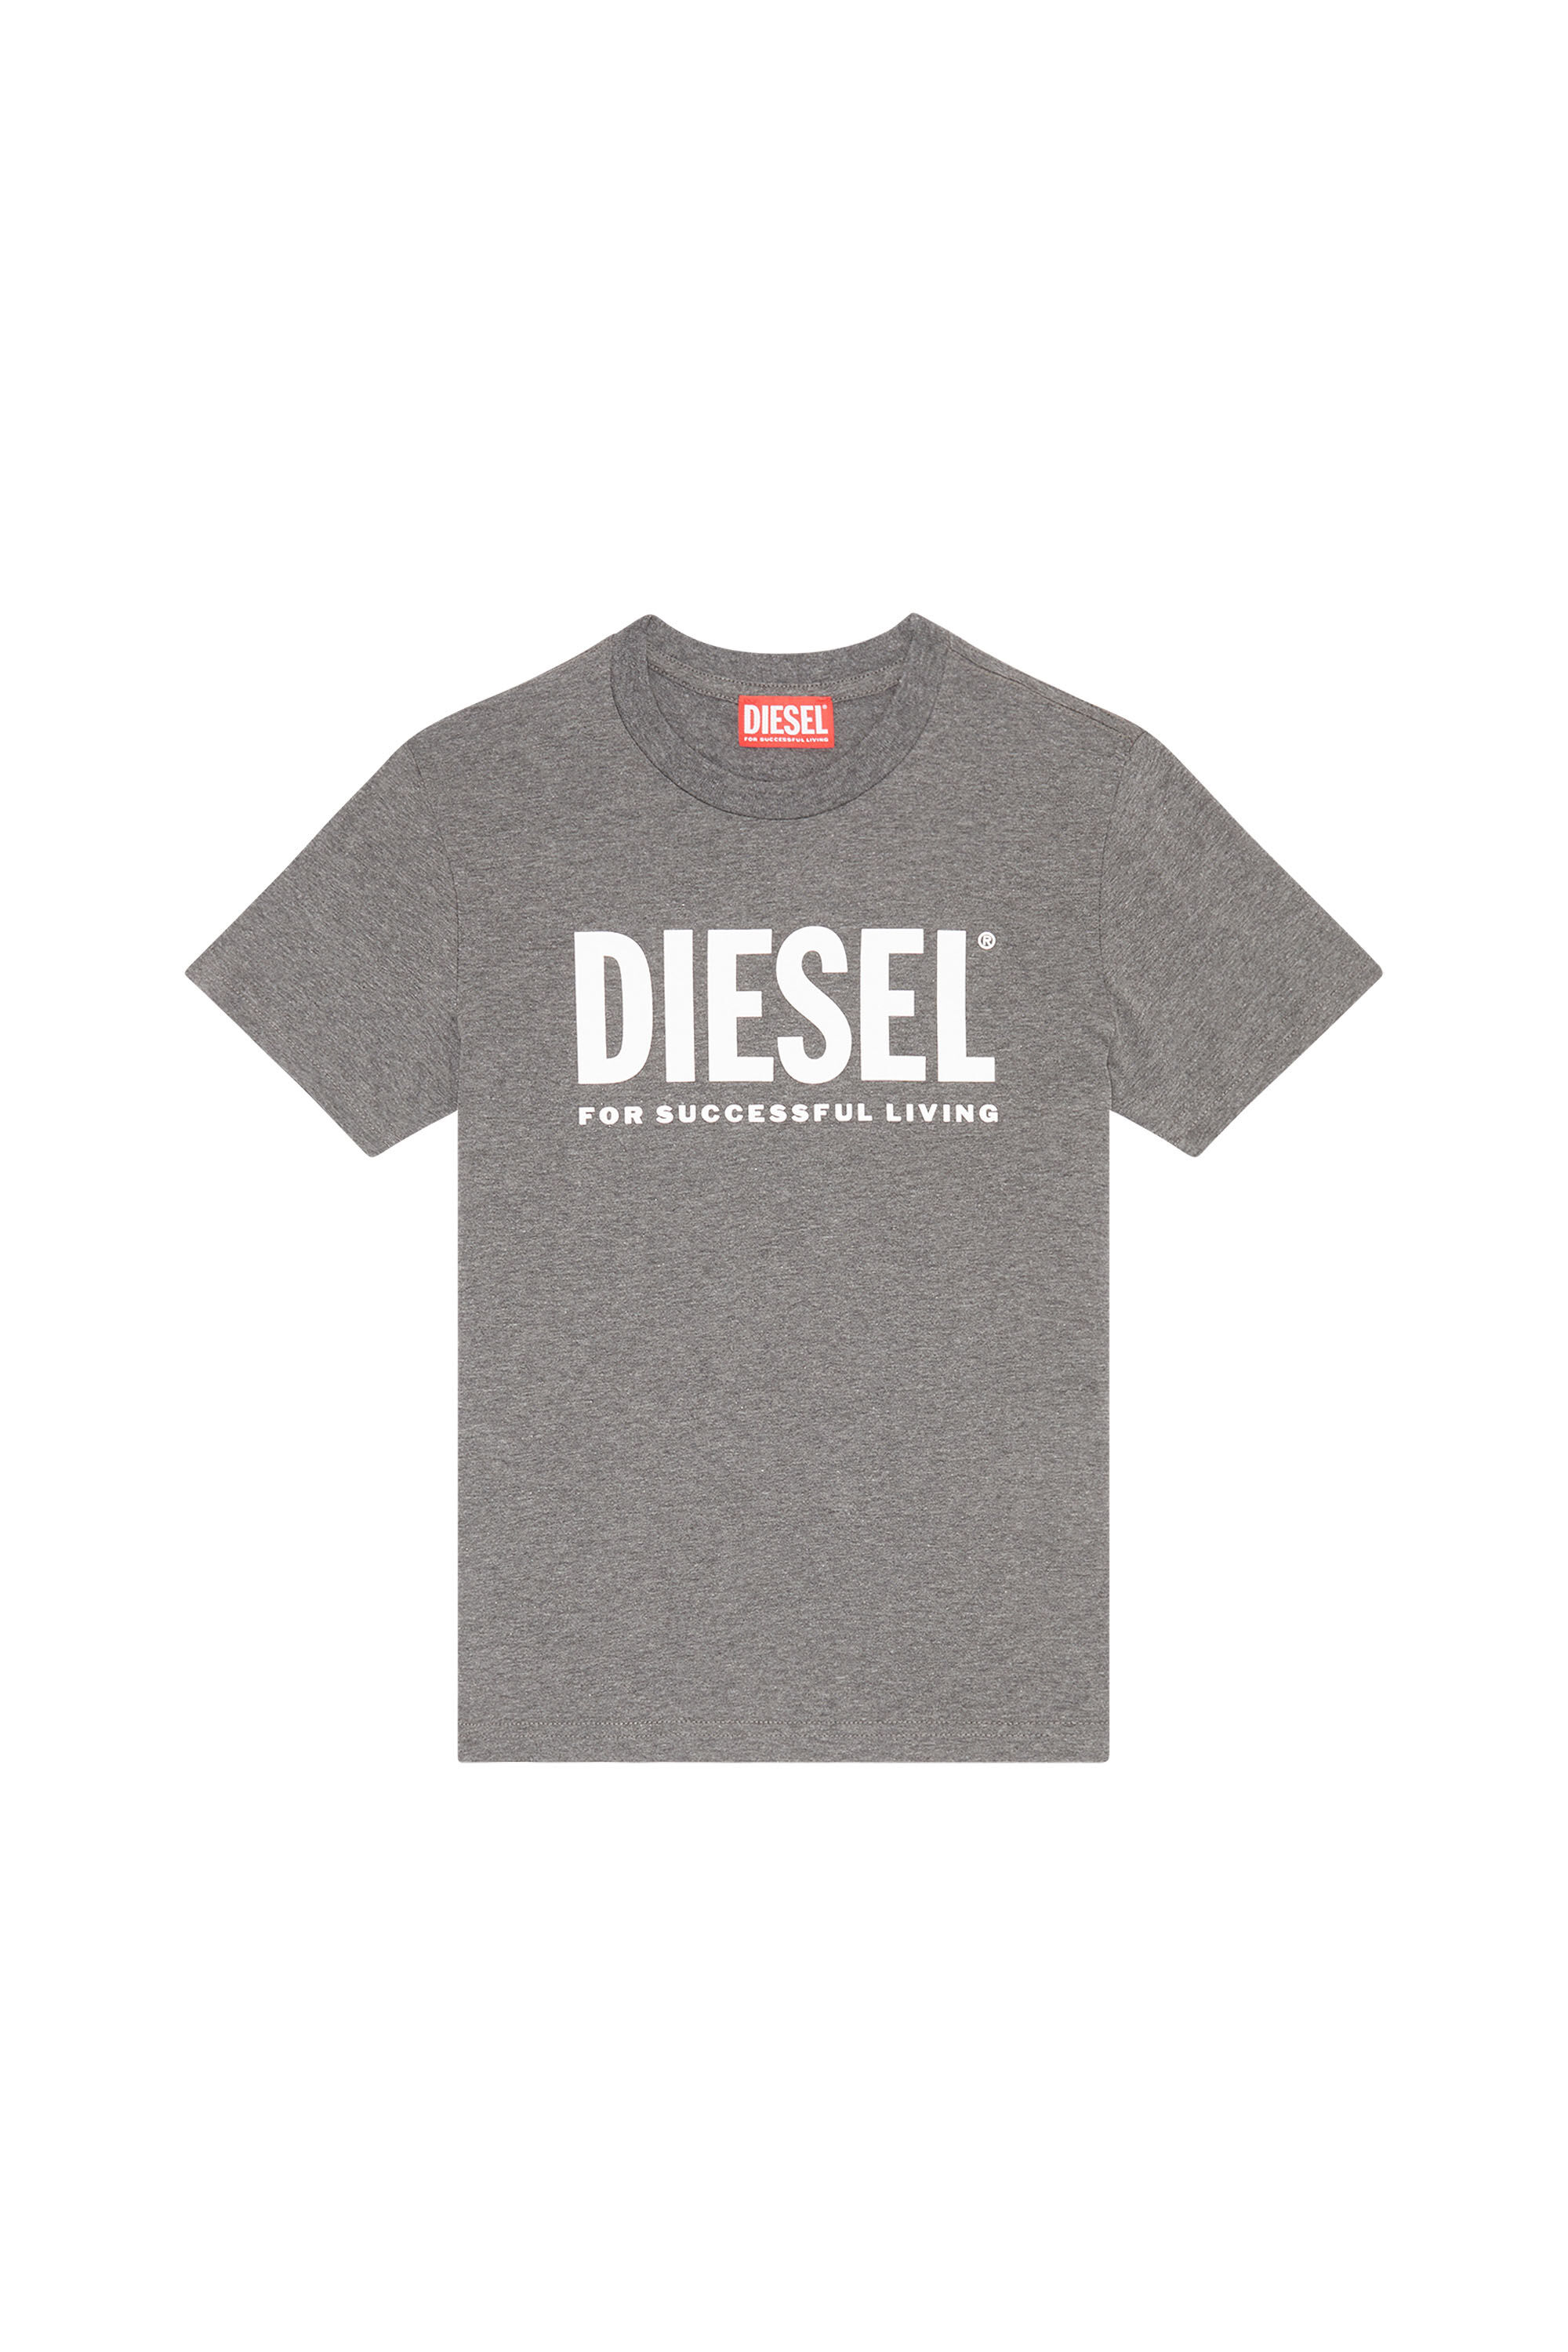 Diesel - TJUSTLOGO, Grey - Image 1